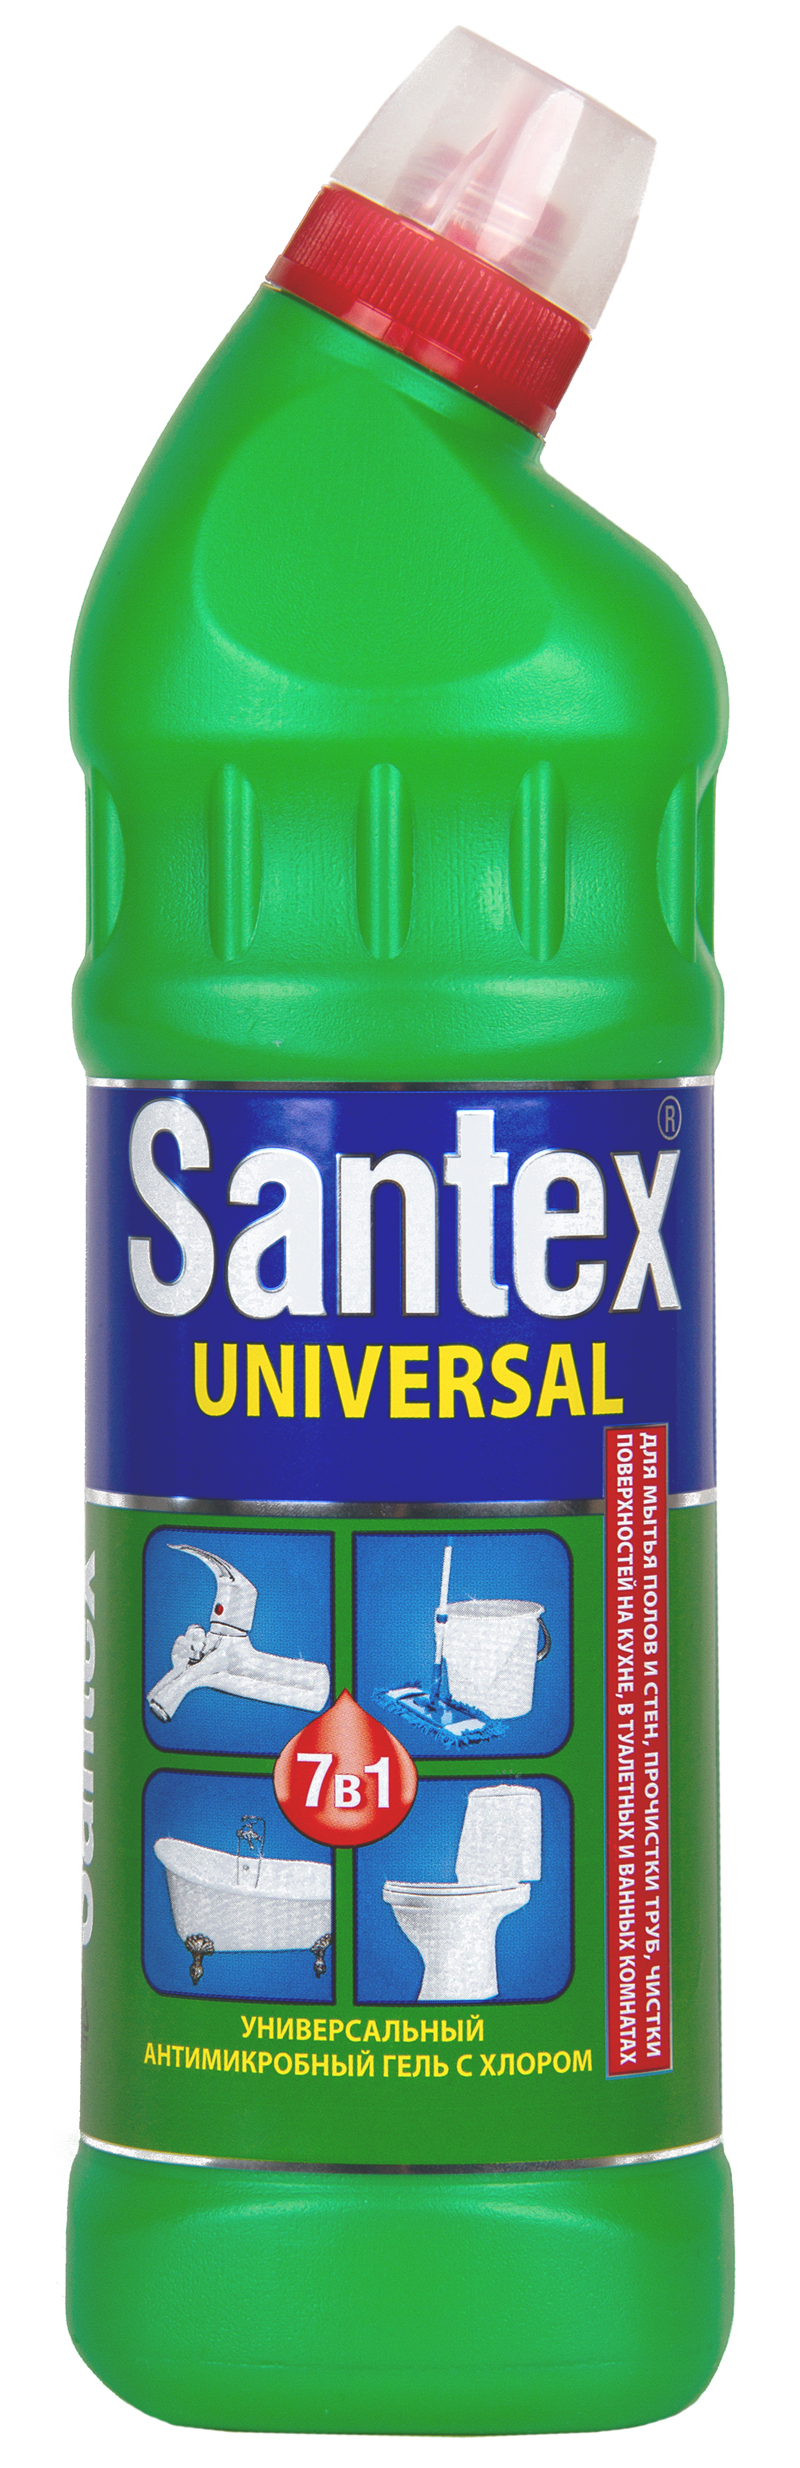 Santex UNIVERSAL гель чист.св-во 750г c хлором